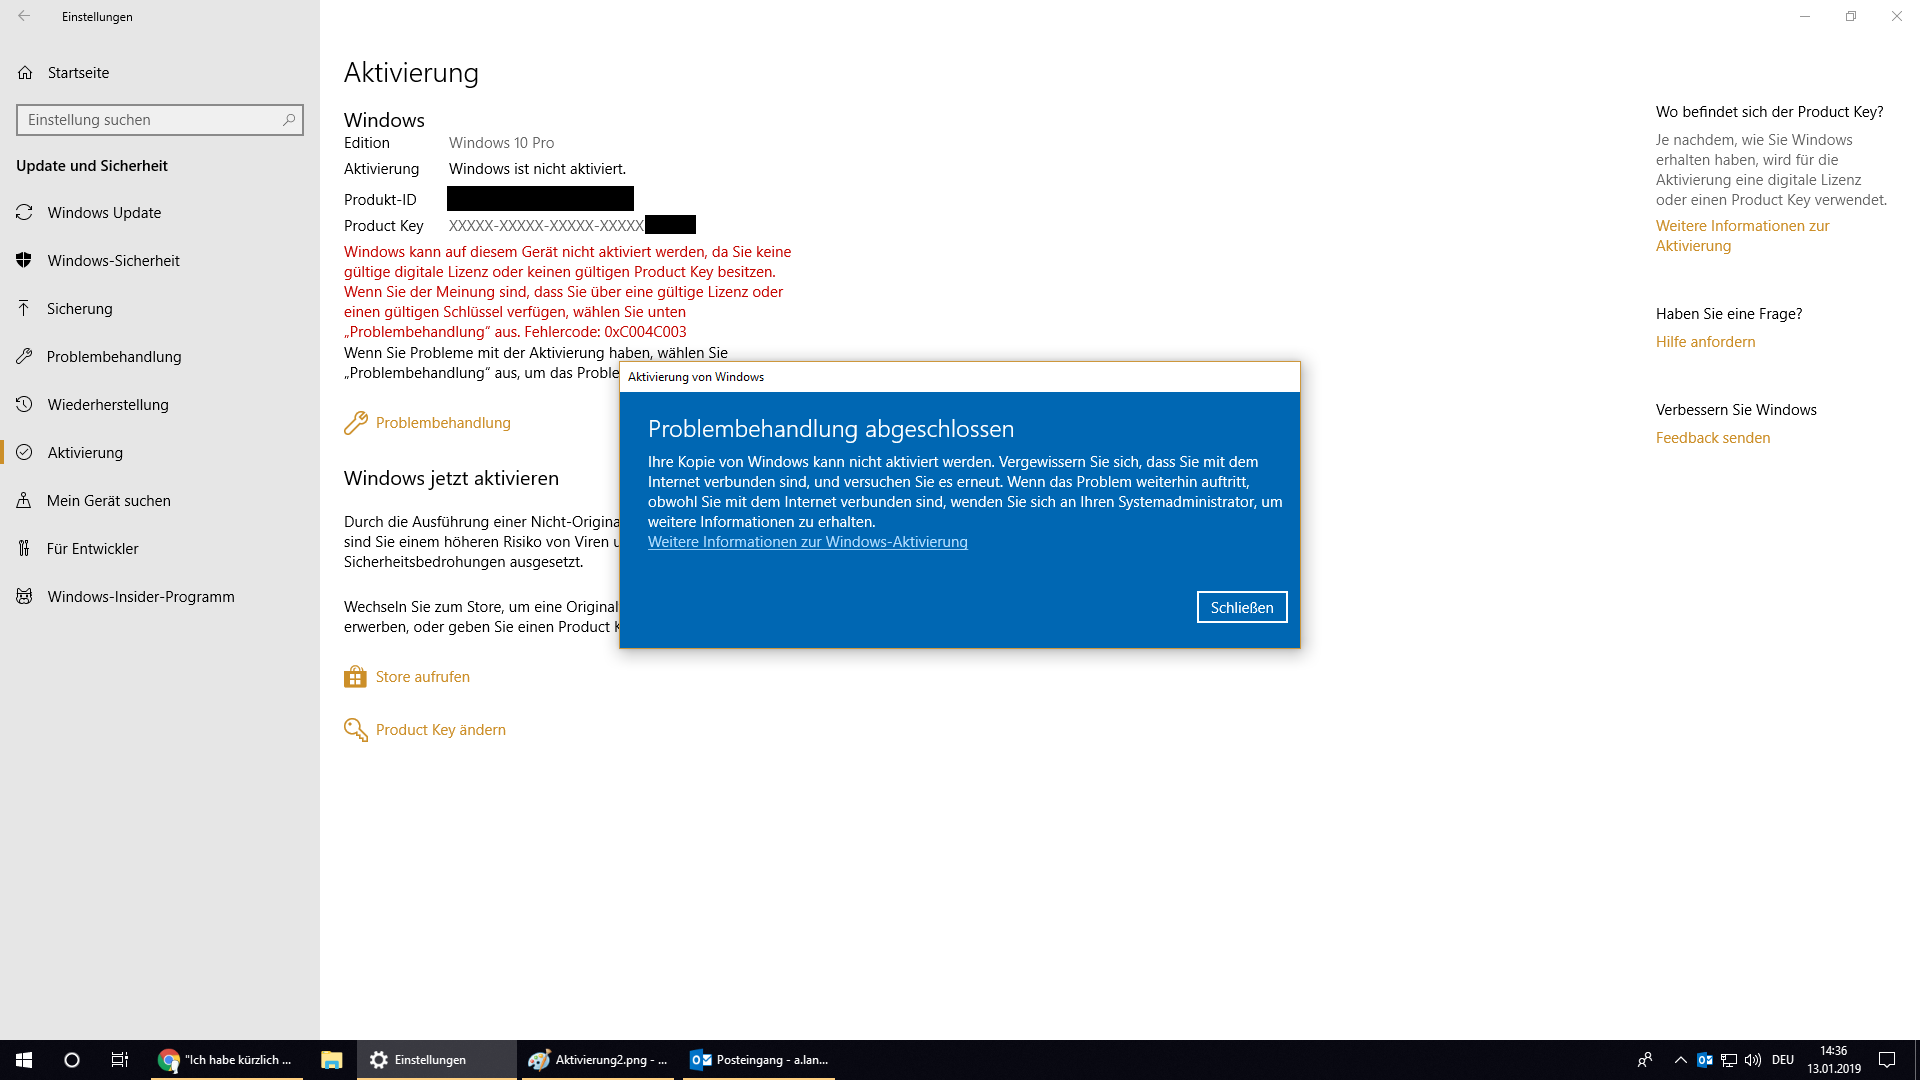 "Ich habe kürzlich die Gerätehardware geändert" Option nicht für Reaktivierung von Windows...